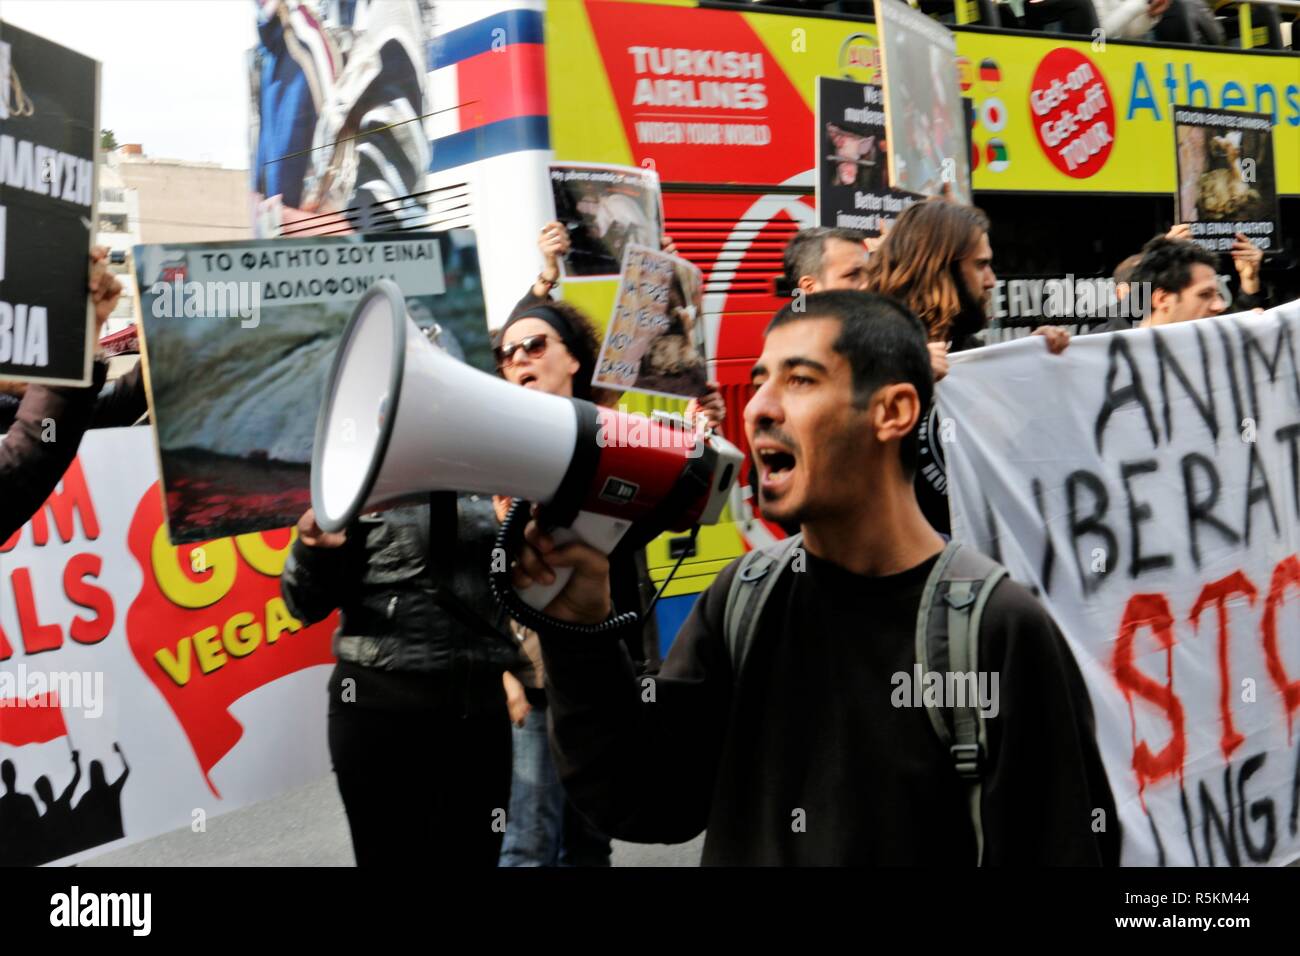 Vu un manifestant scandant des slogans sur un mégaphone pendant la  manifestation. Militants des droits de l'animal démontrent à Athènes contre  l'abus des animaux, de la violence, les mauvais traitements envers les